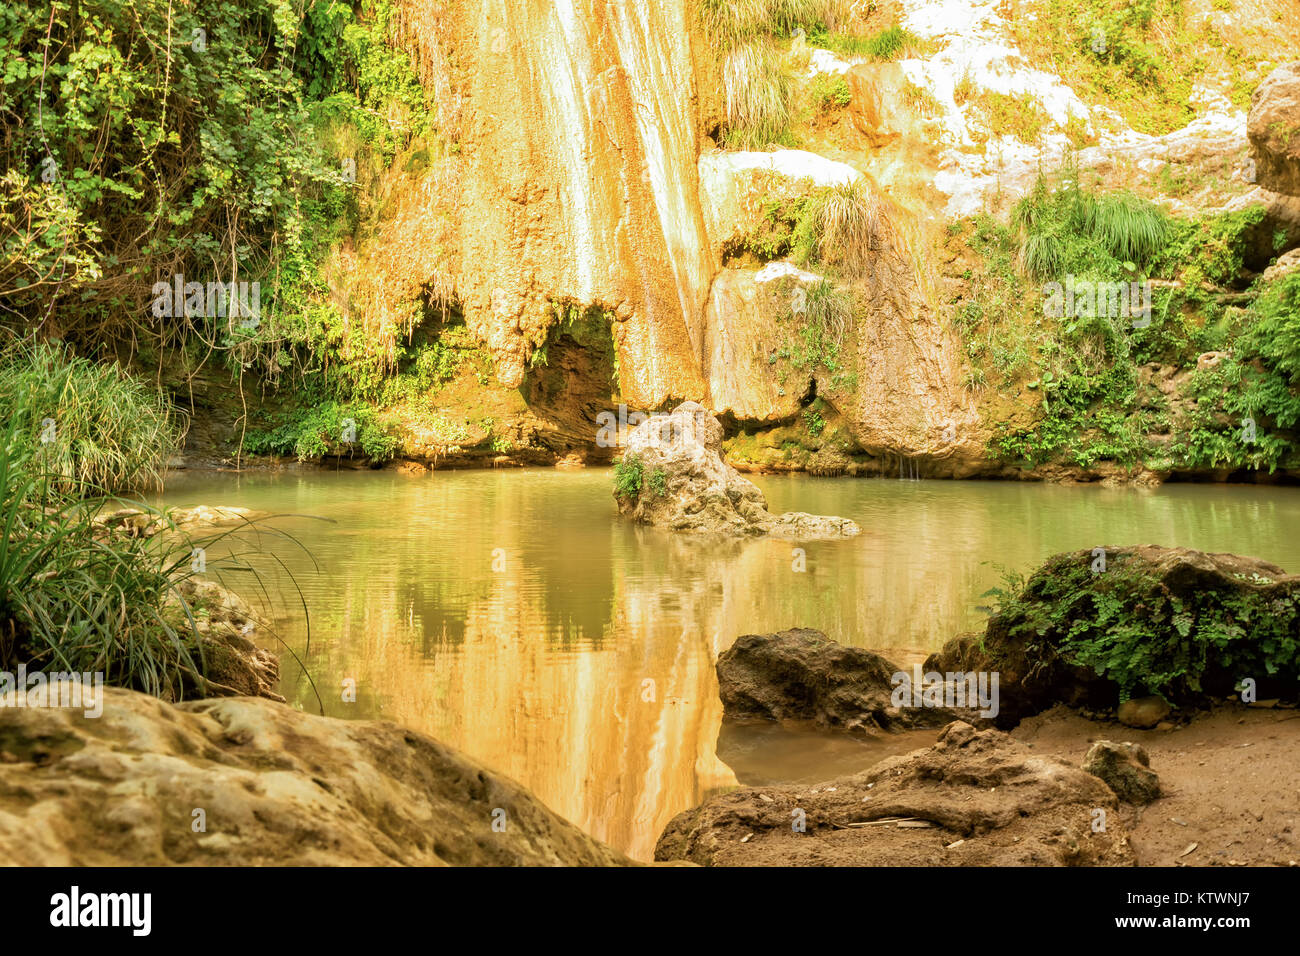 Kalamari Wasserfall in Peloponnes, Griechenland. Eine bekannte touristische Destination. Stockfoto